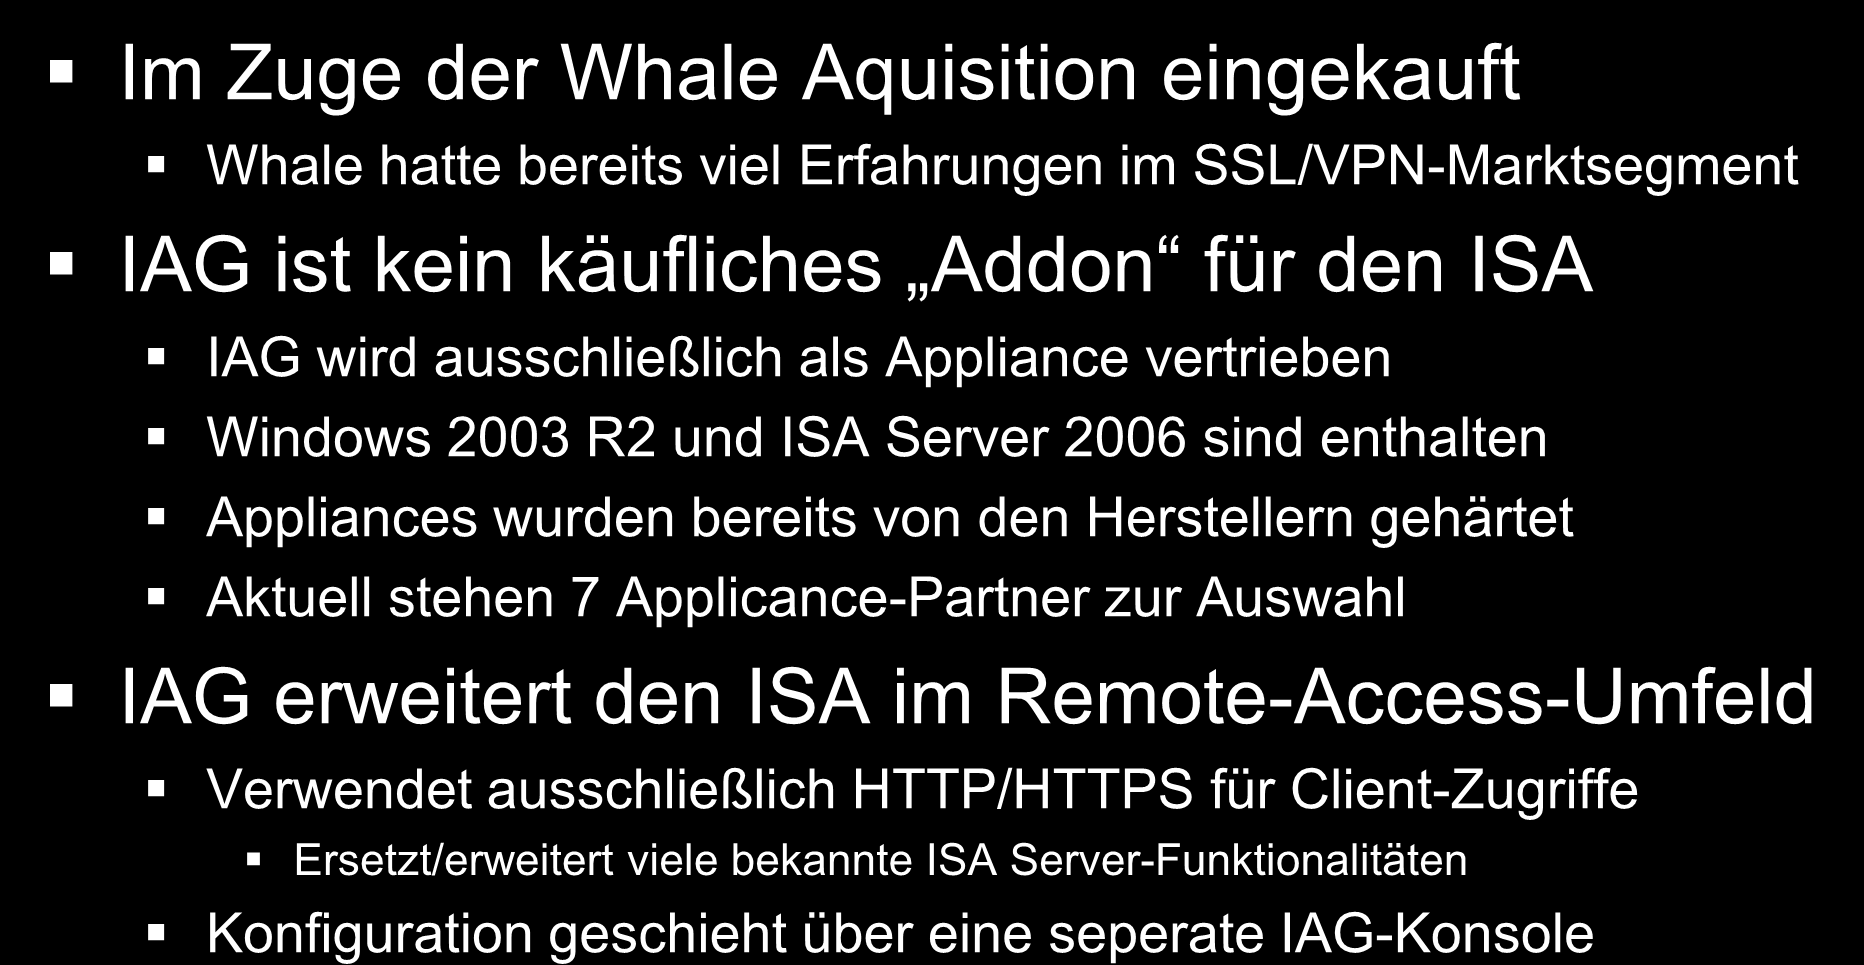 Microsoft Forefront Edge Security Wissenswertes zum IAG 2007 Im Zuge der Whale Aquisition eingekauft Whale hatte bereits viel Erfahrungen im SSL/VPN-Marktsegment IAG ist kein käufliches Addon für den